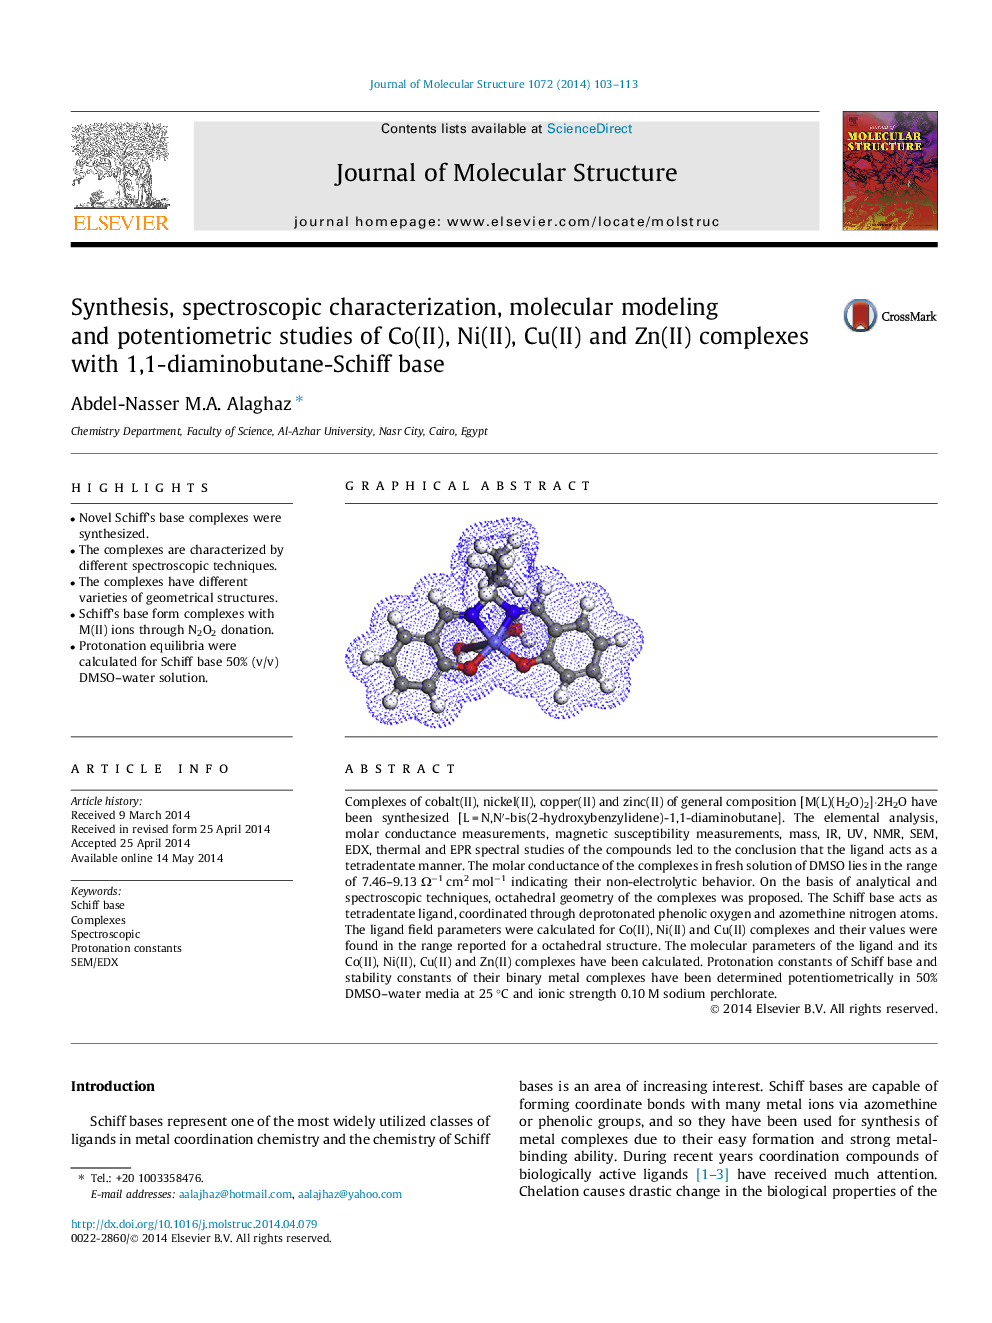 Synthesis, spectroscopic characterization, molecular modeling and potentiometric studies of Co(II), Ni(II), Cu(II) and Zn(II) complexes with 1,1-diaminobutane-Schiff base